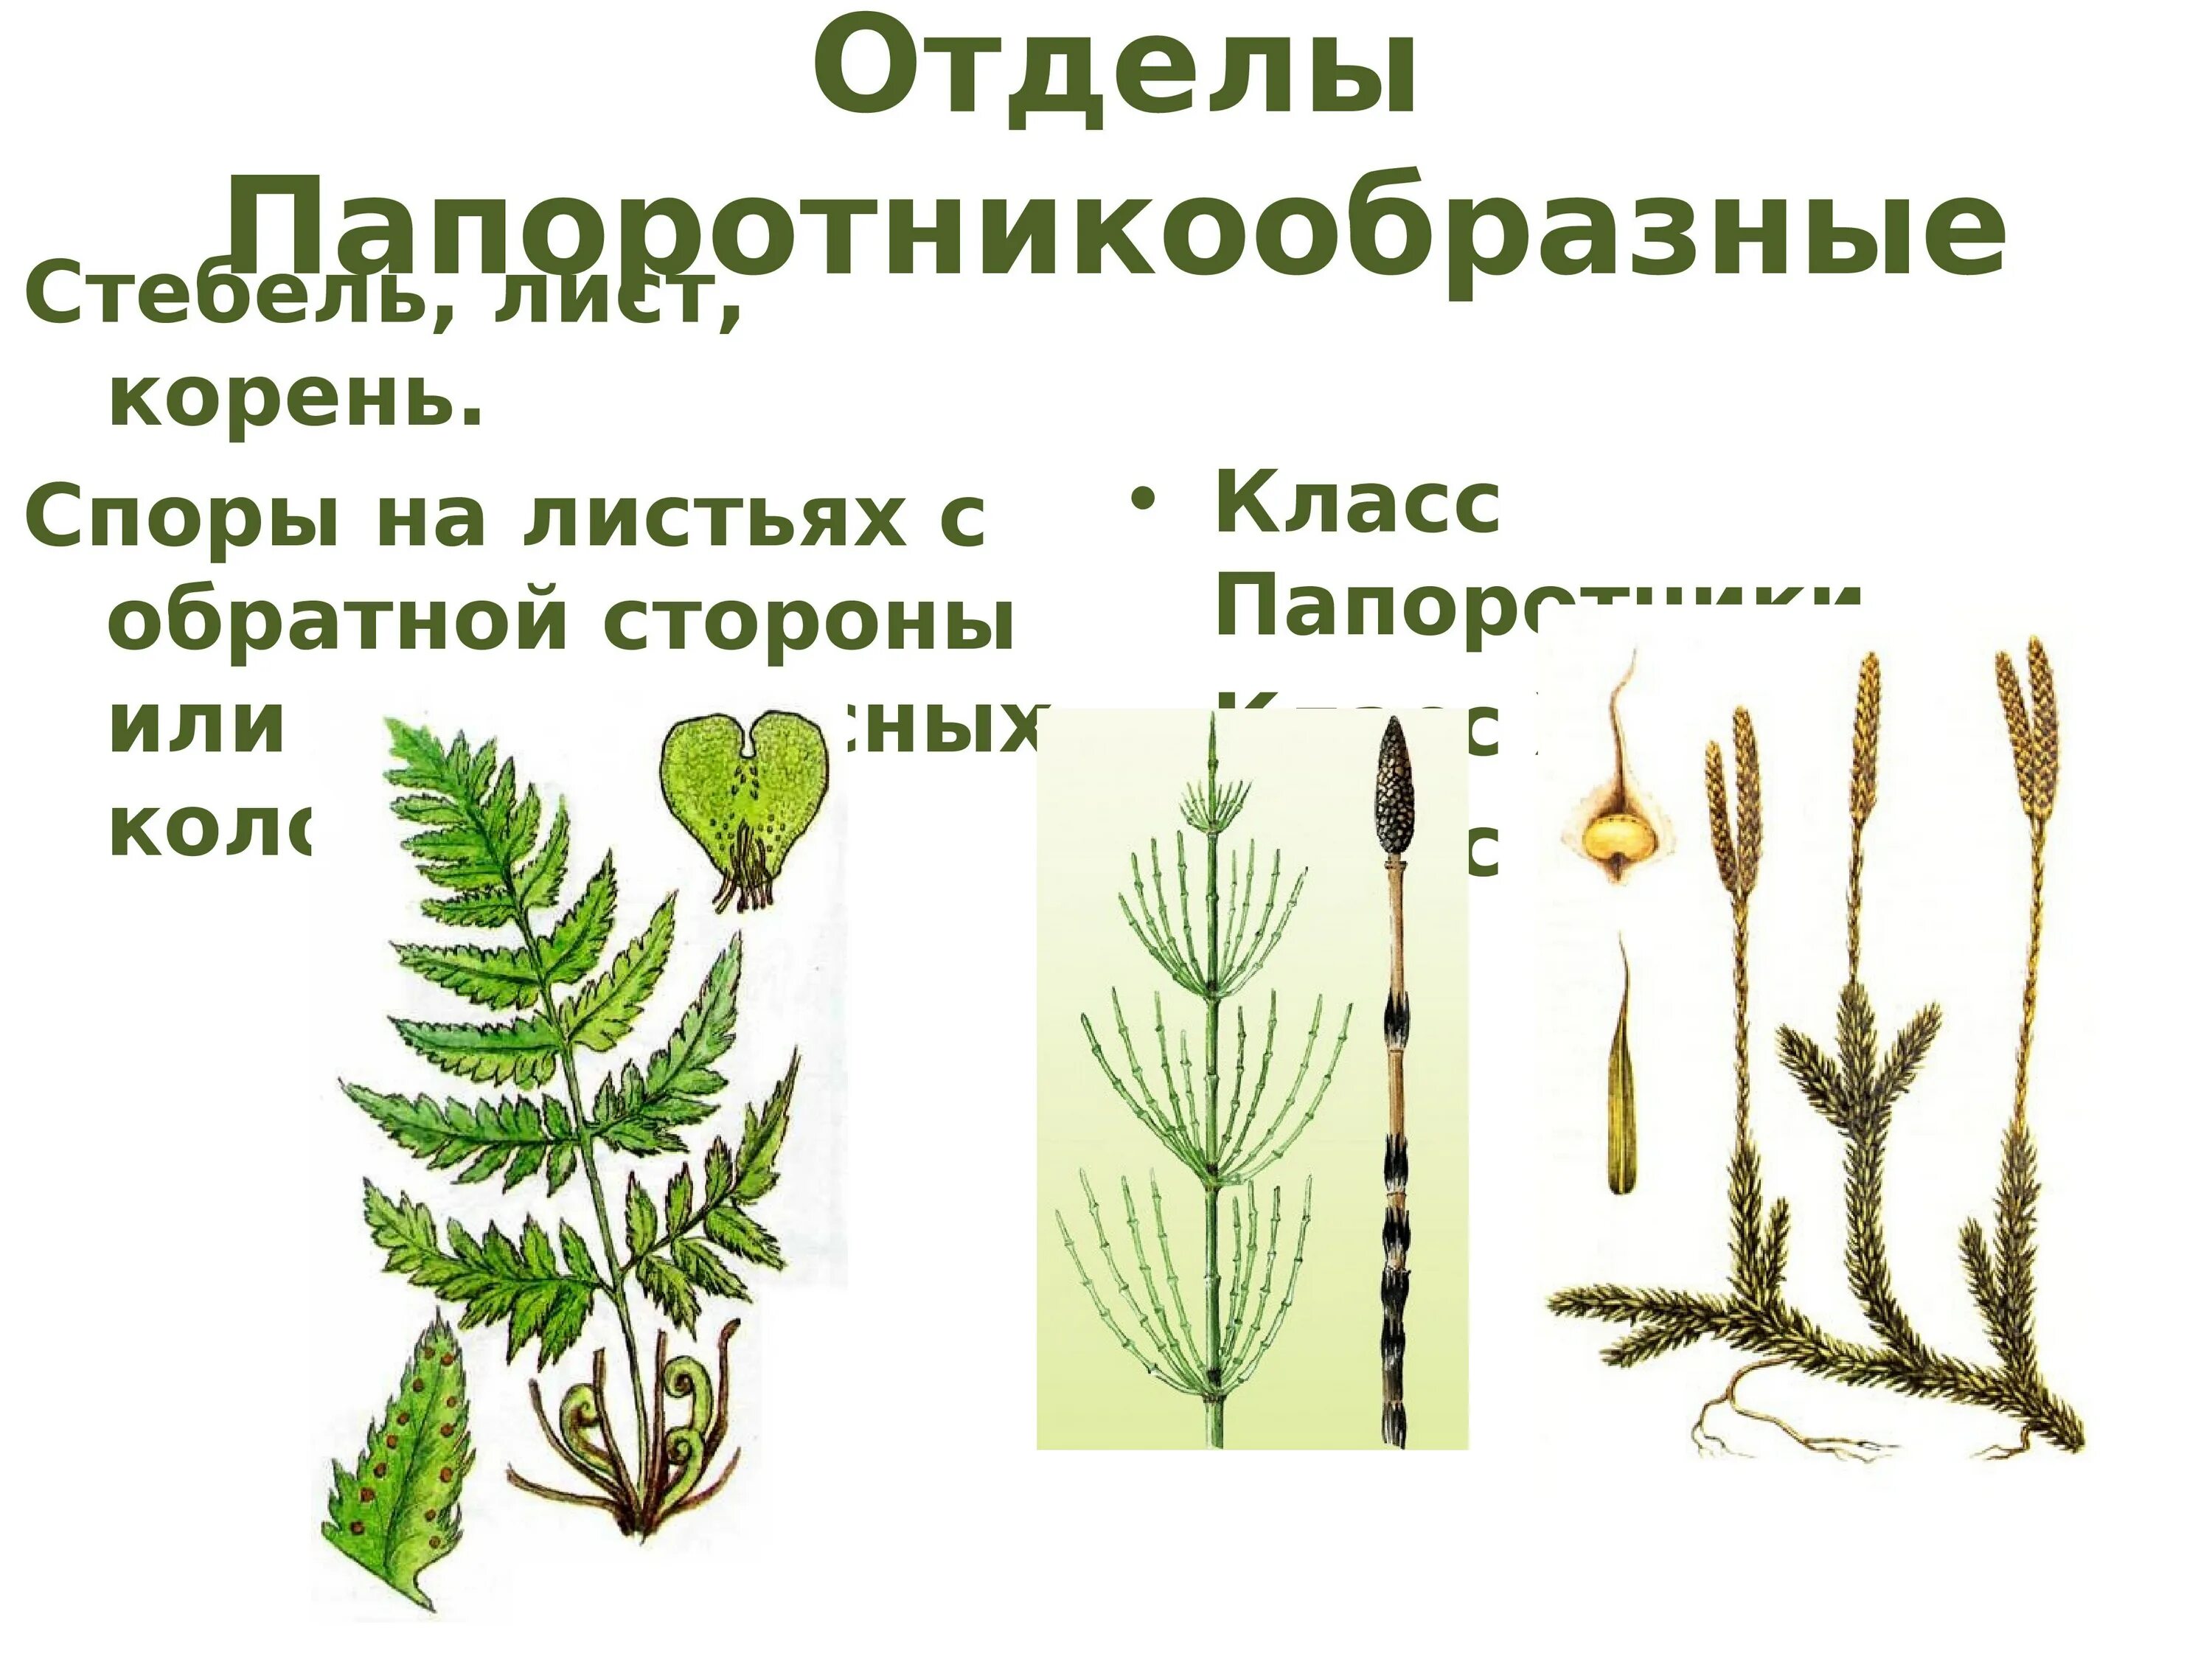 Споровые растения примеры названия. Высшие растения расчленение тела. Строение тела высших растений. Высшие растения ткани и органы. Высшие растения это какие.